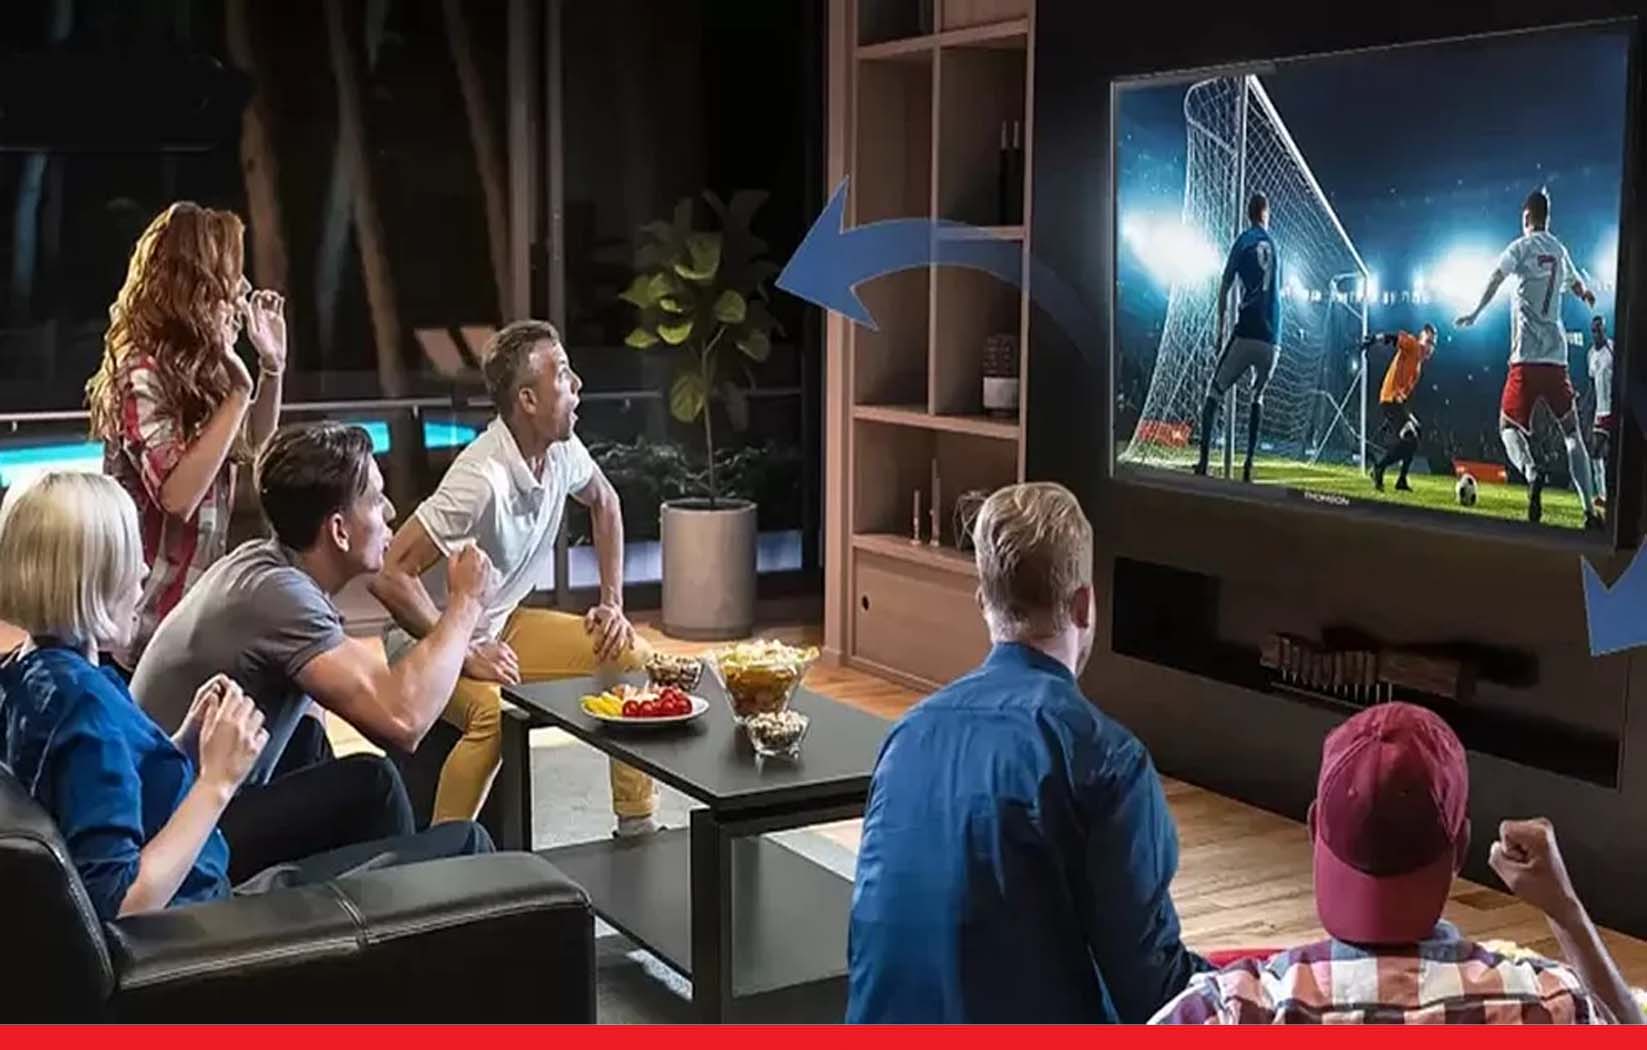 सोनी से लेकर एमआई तक, फ्लिपकार्ट सेल में सस्ते मिल रहे हैं ये स्मार्ट टीवी